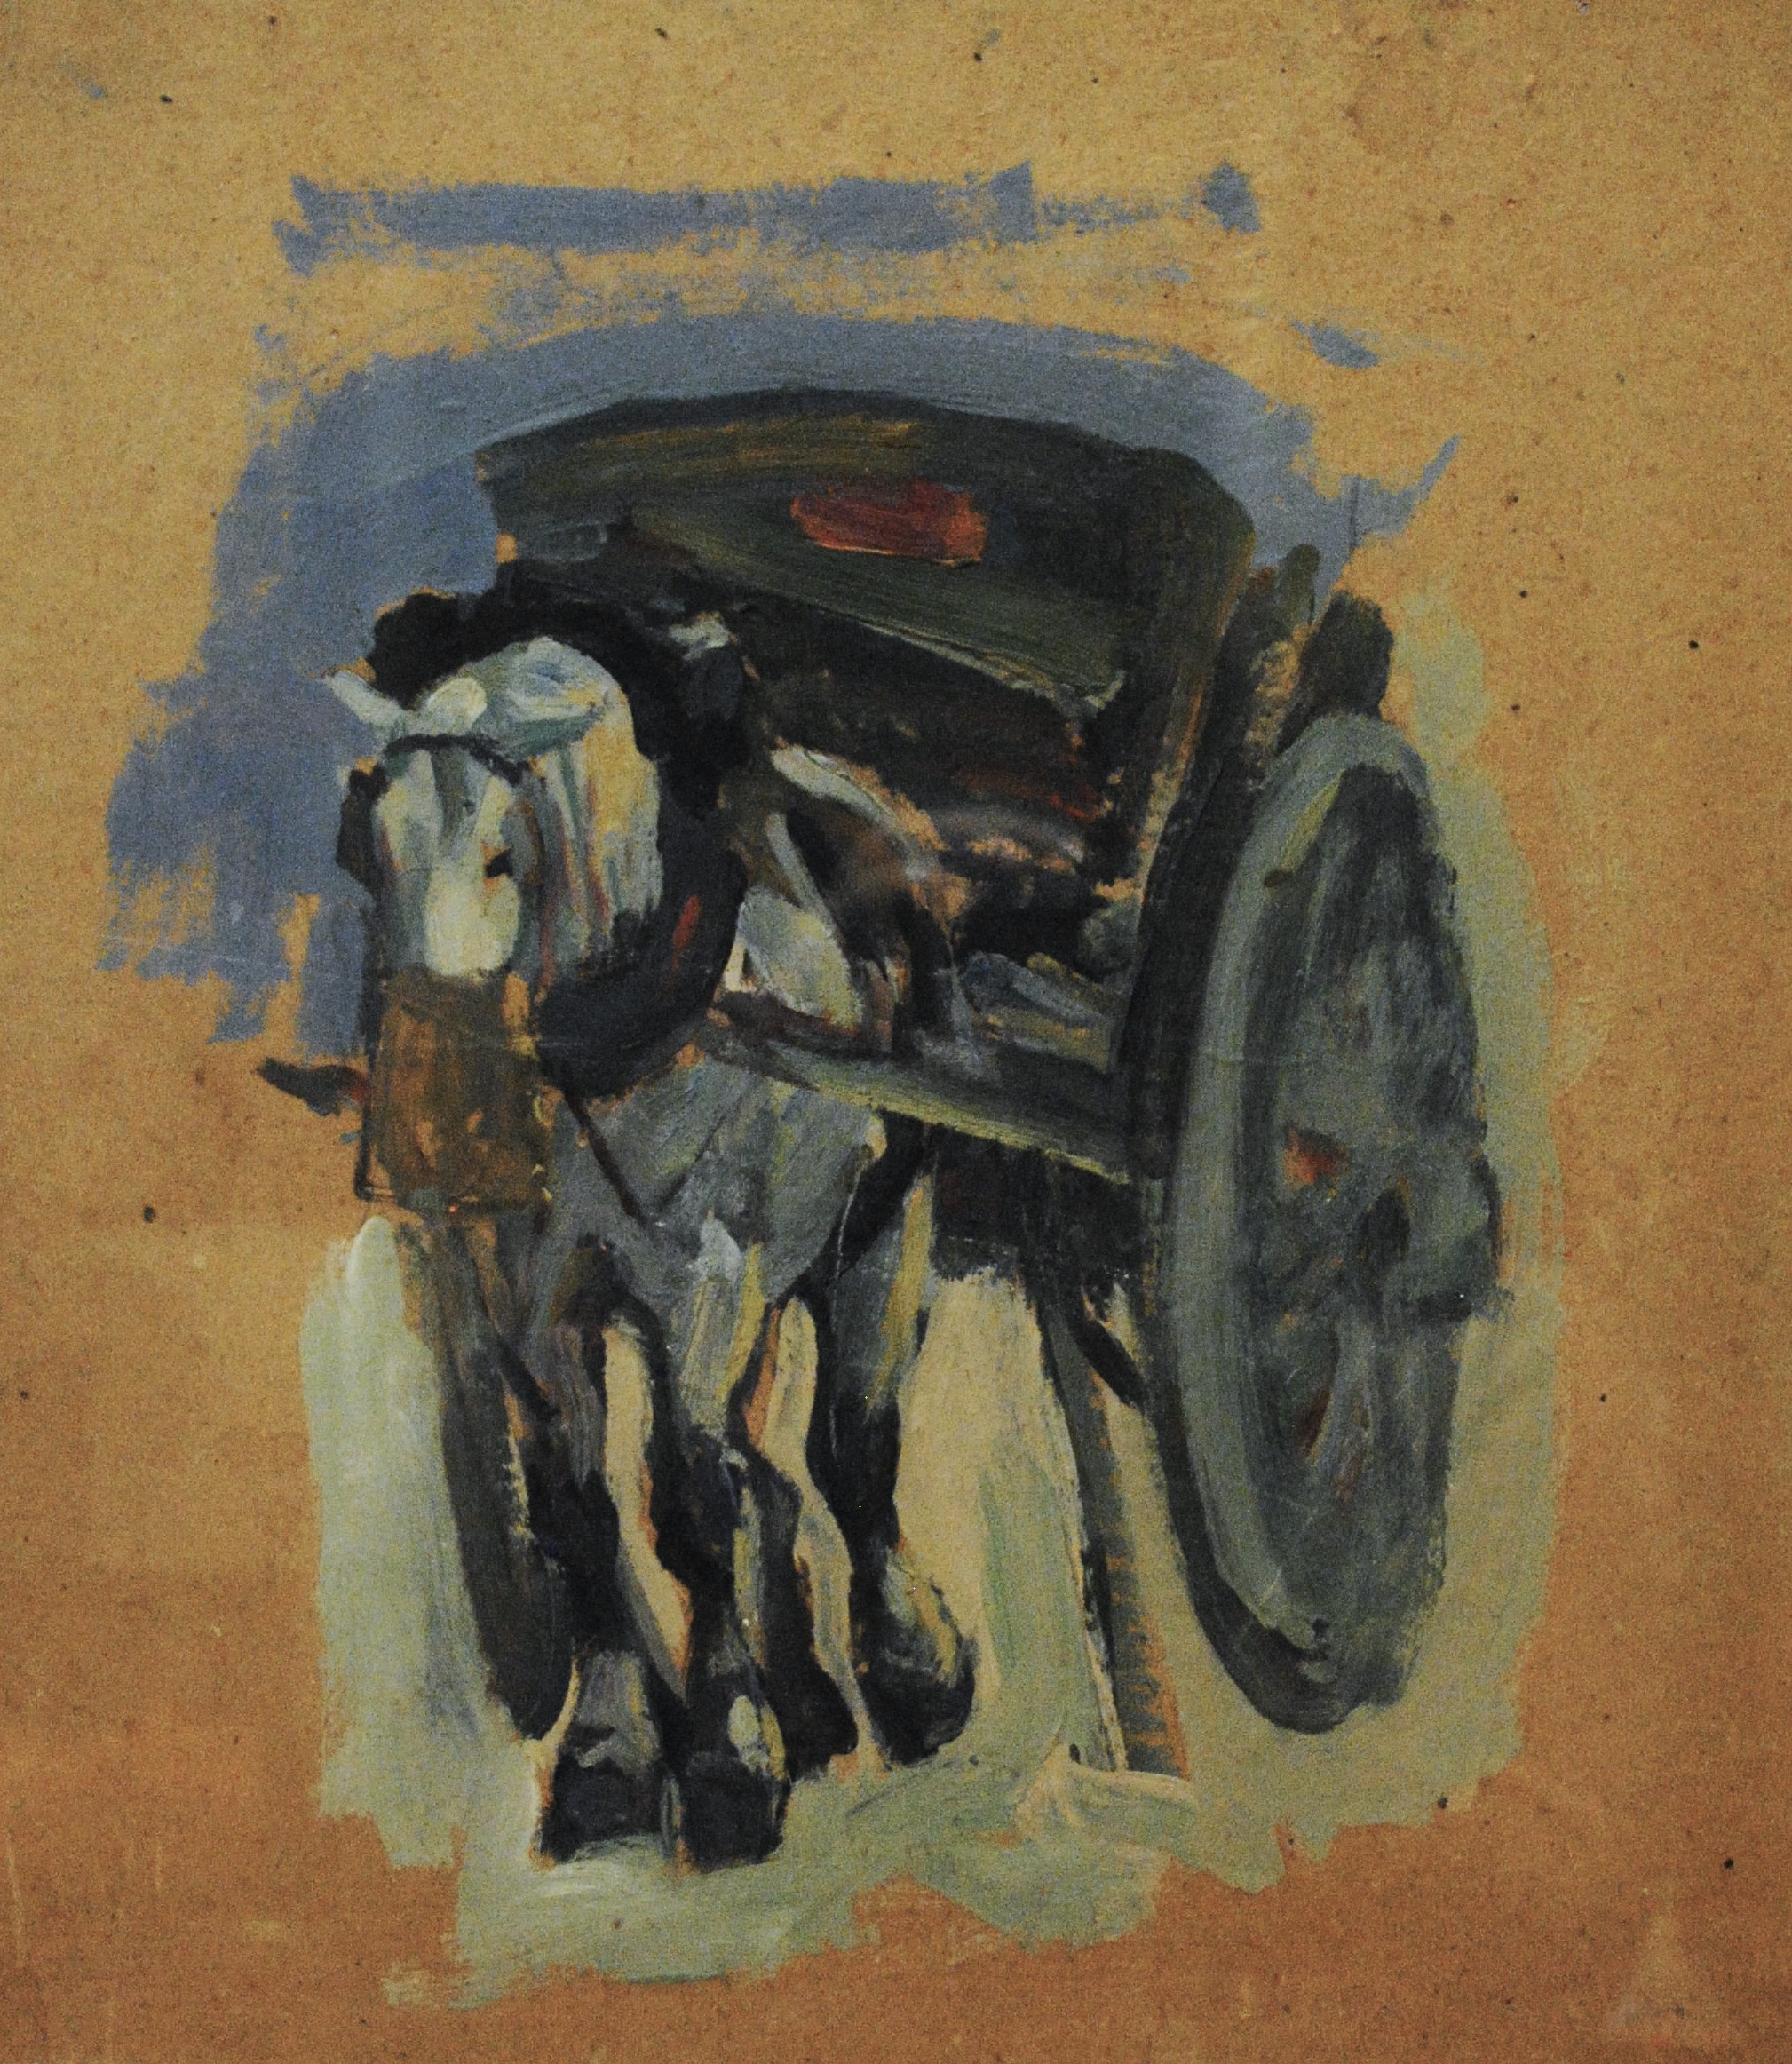 Pintura de José Manaut titulada Carro con arena, París, 1925. Óleo sobre tabla.